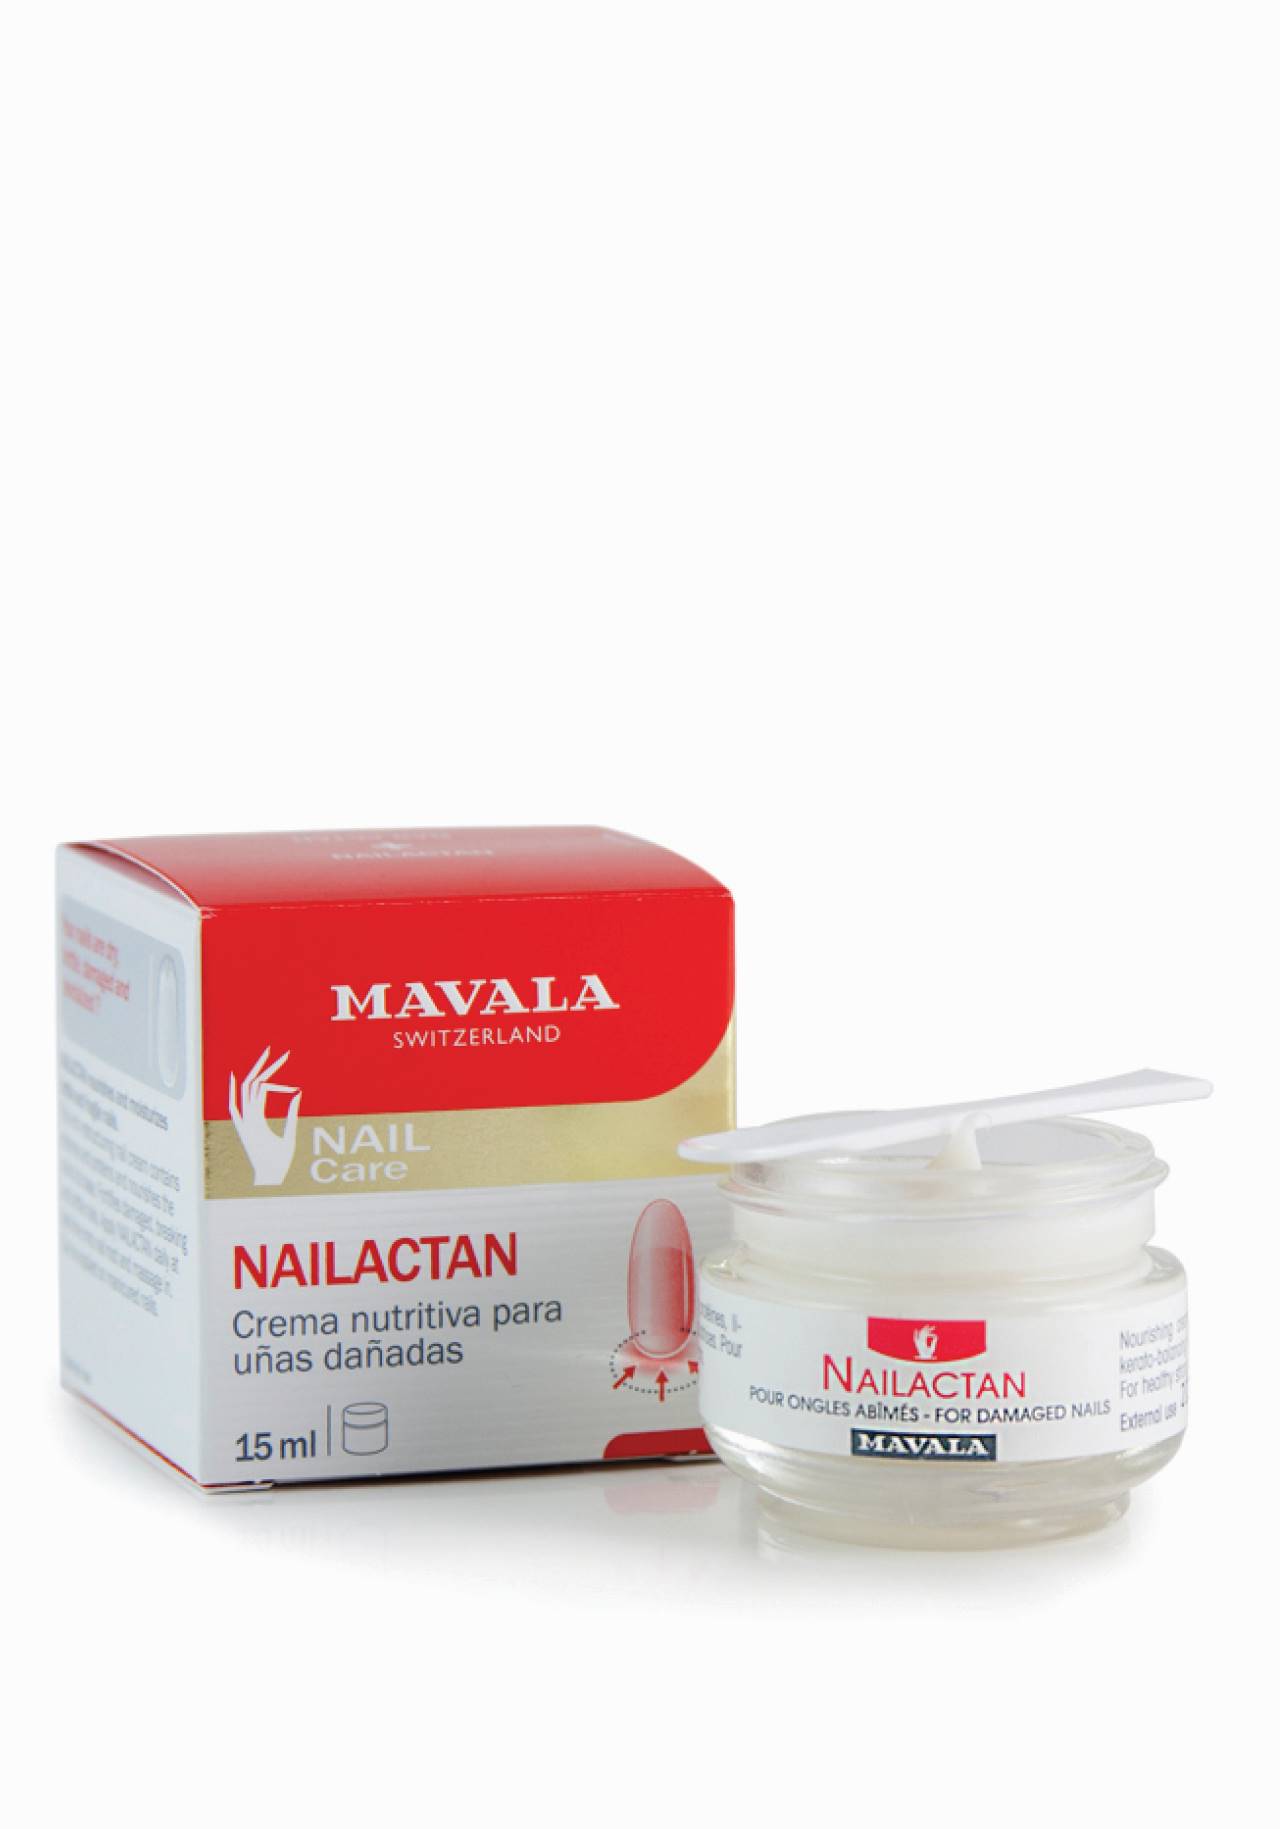 Crema de uñas Nailactan de Mavala Protege y cuida las manos durante la cuarentena